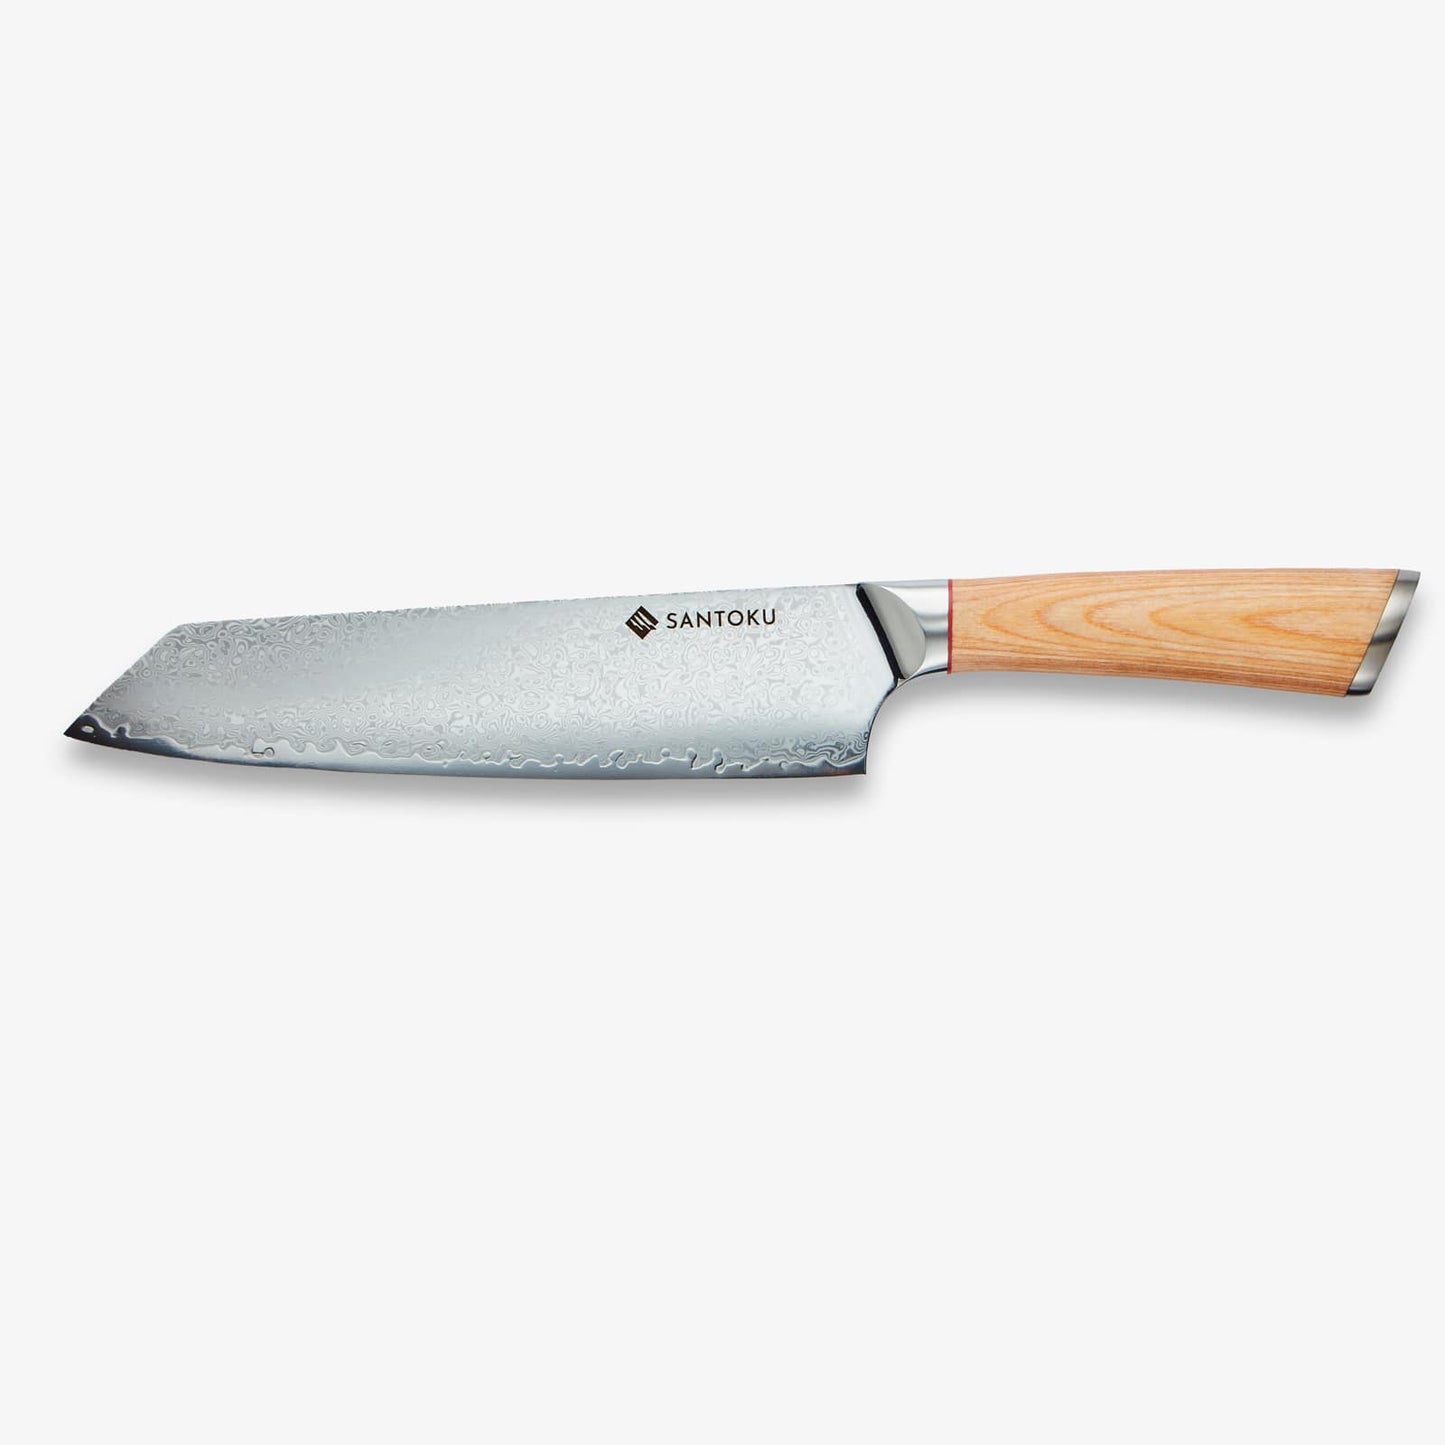 हरुता (はる た) 67 लेयर ऑस 10 दमिश्क स्टील किचन चाकू